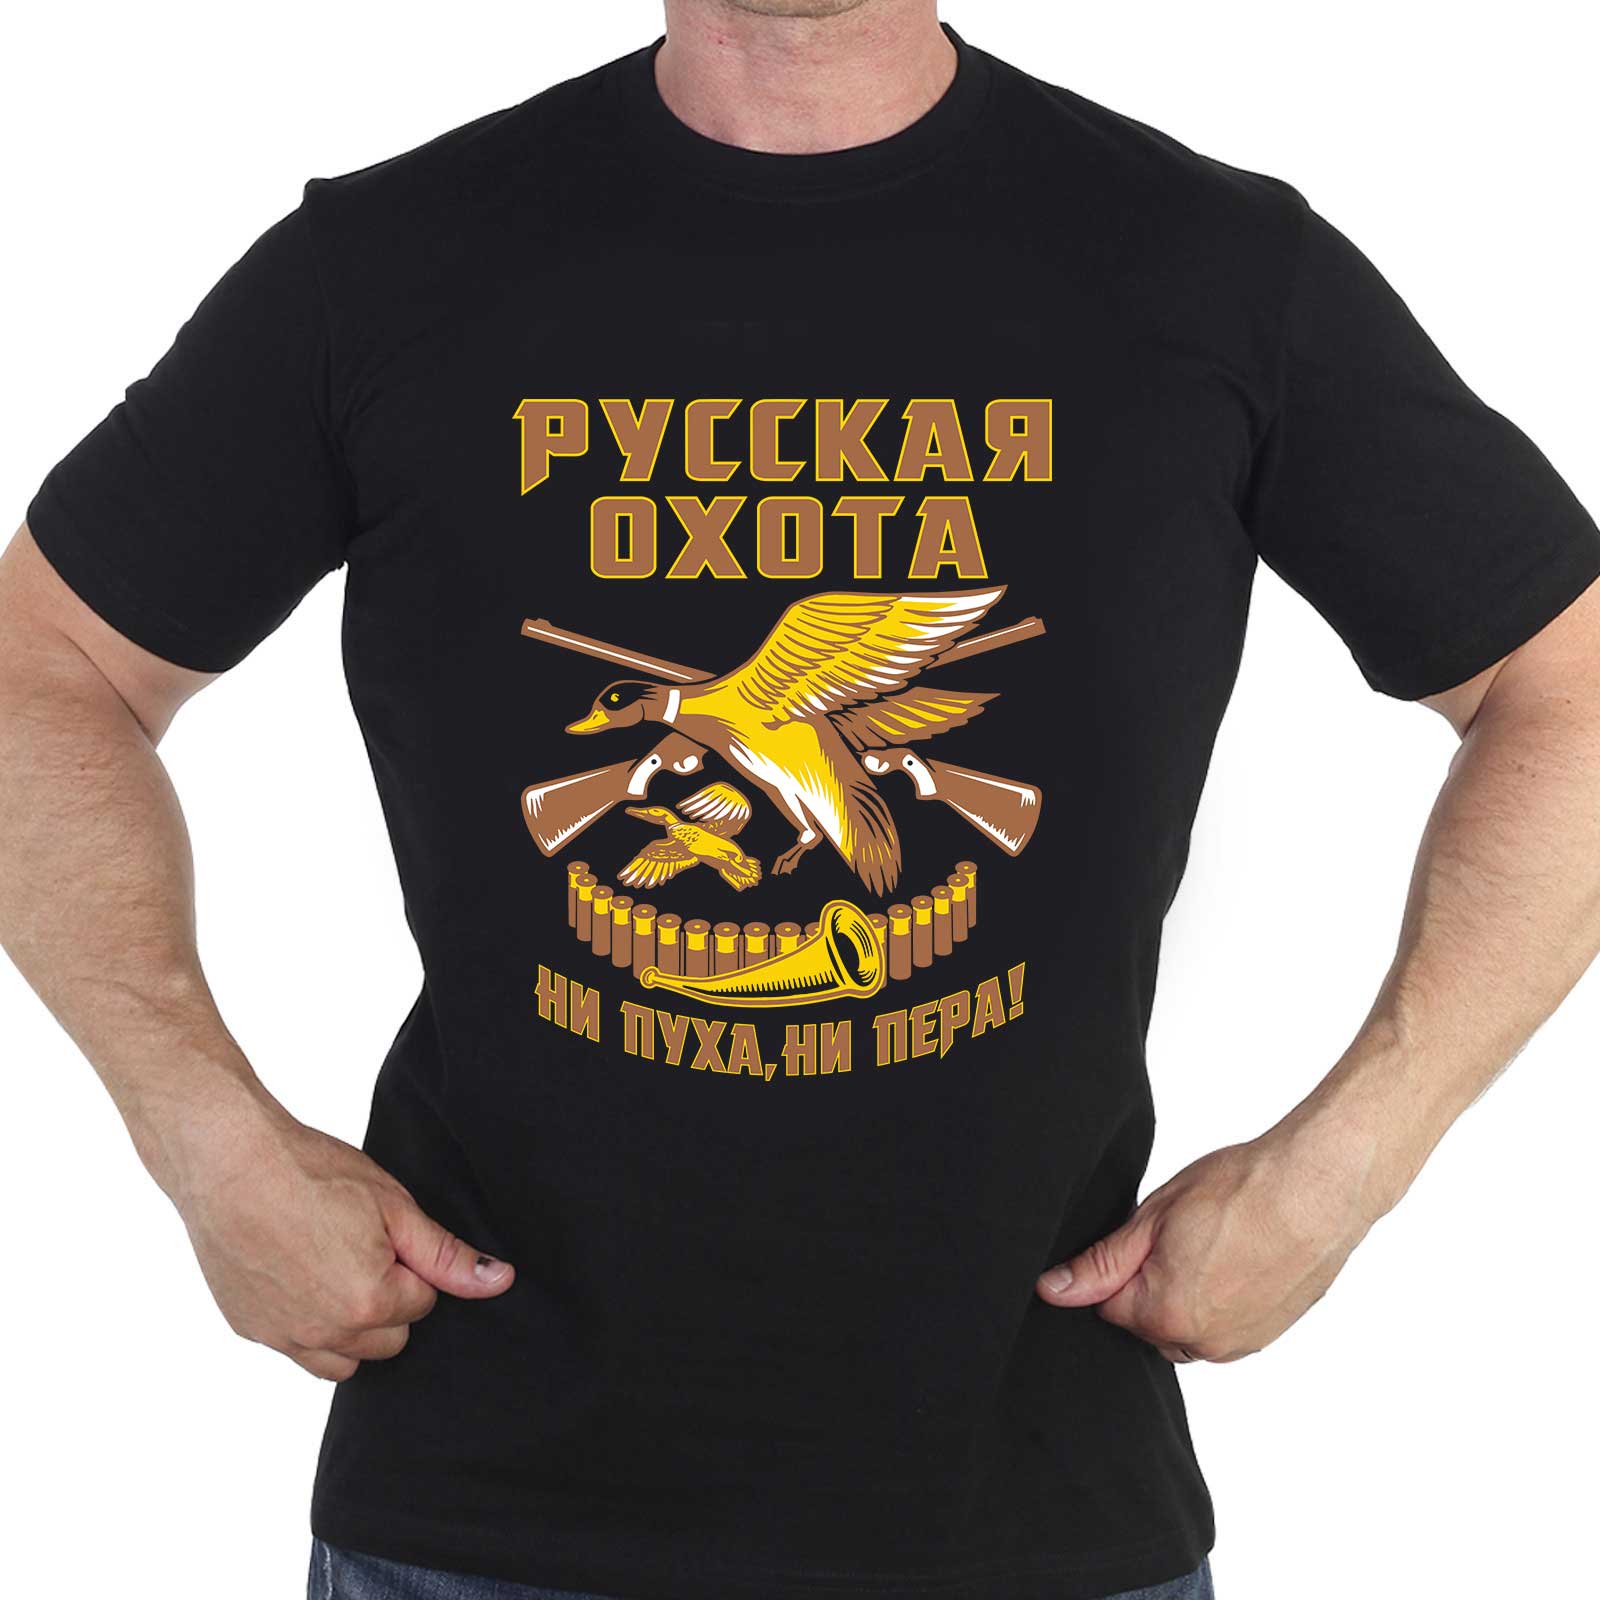 Купить хлопковую футболку с принтом "Русская охота"